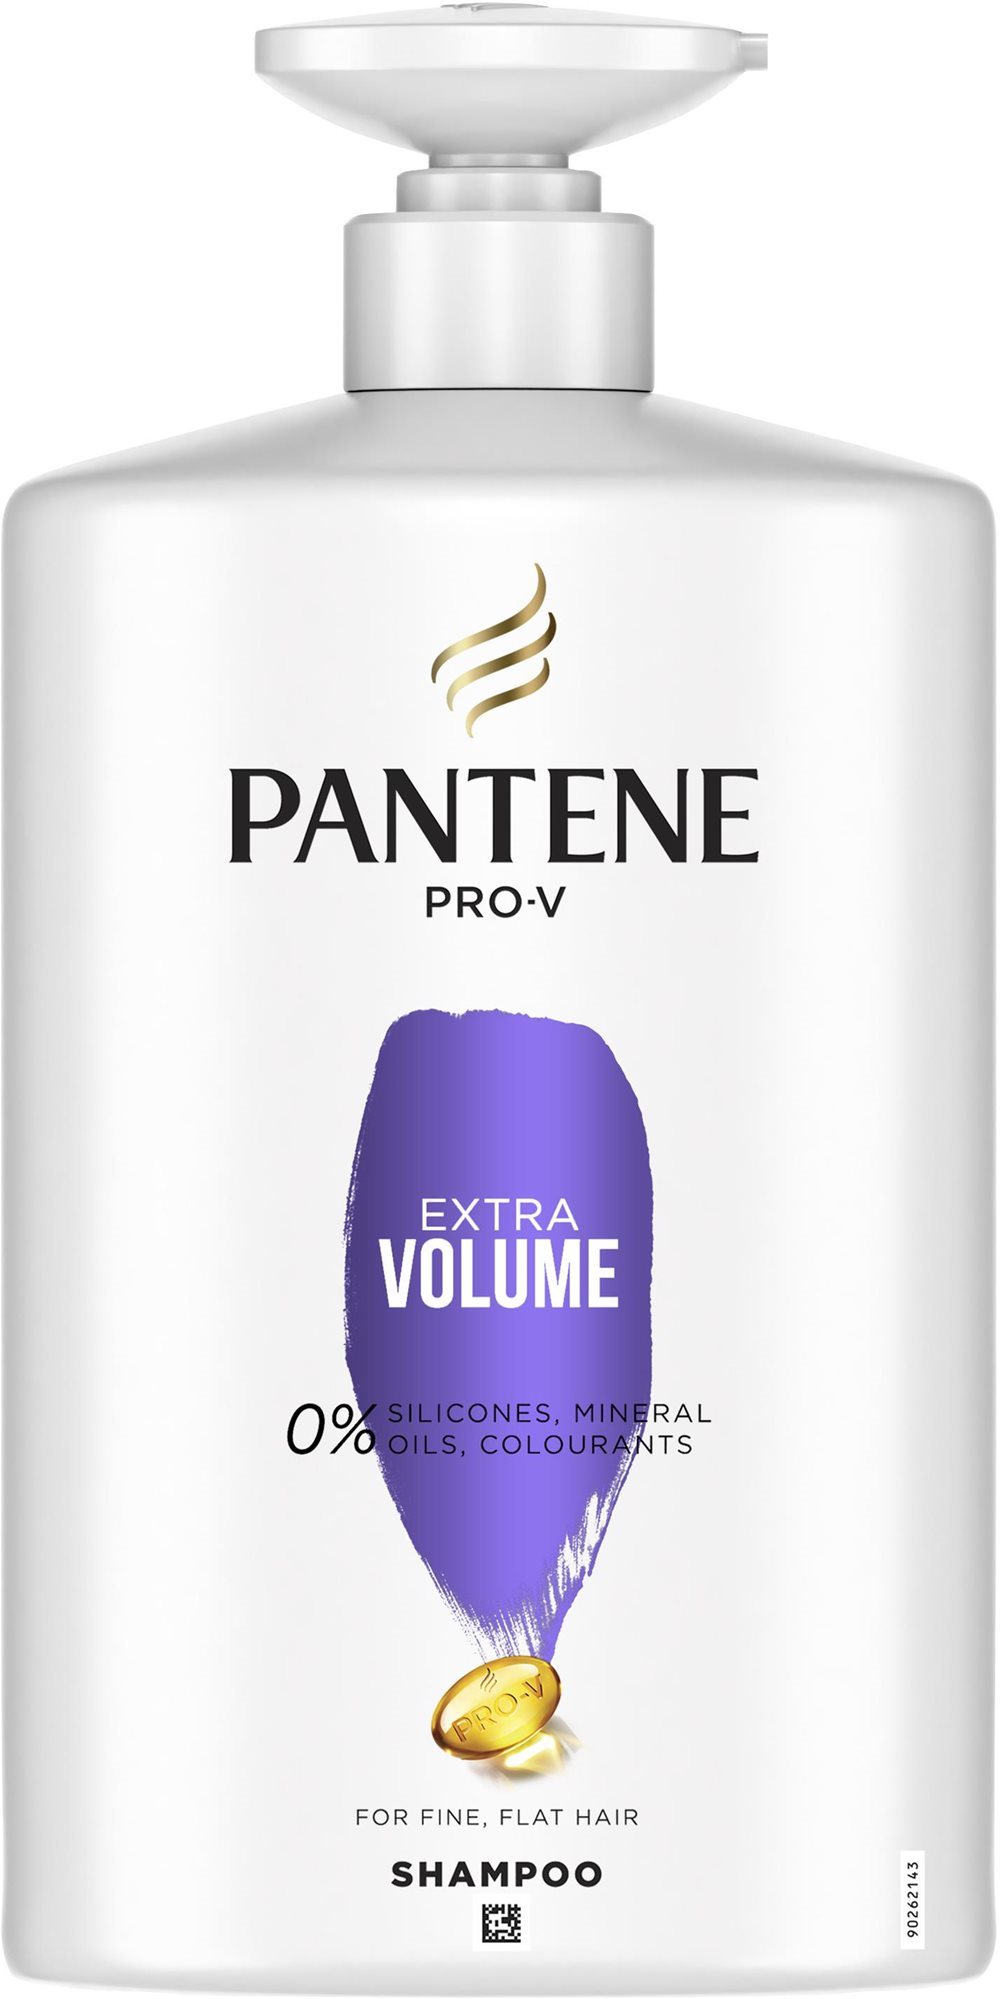 PANTENE Pro-V Extra Volume lelapuló hajra 1000 ml